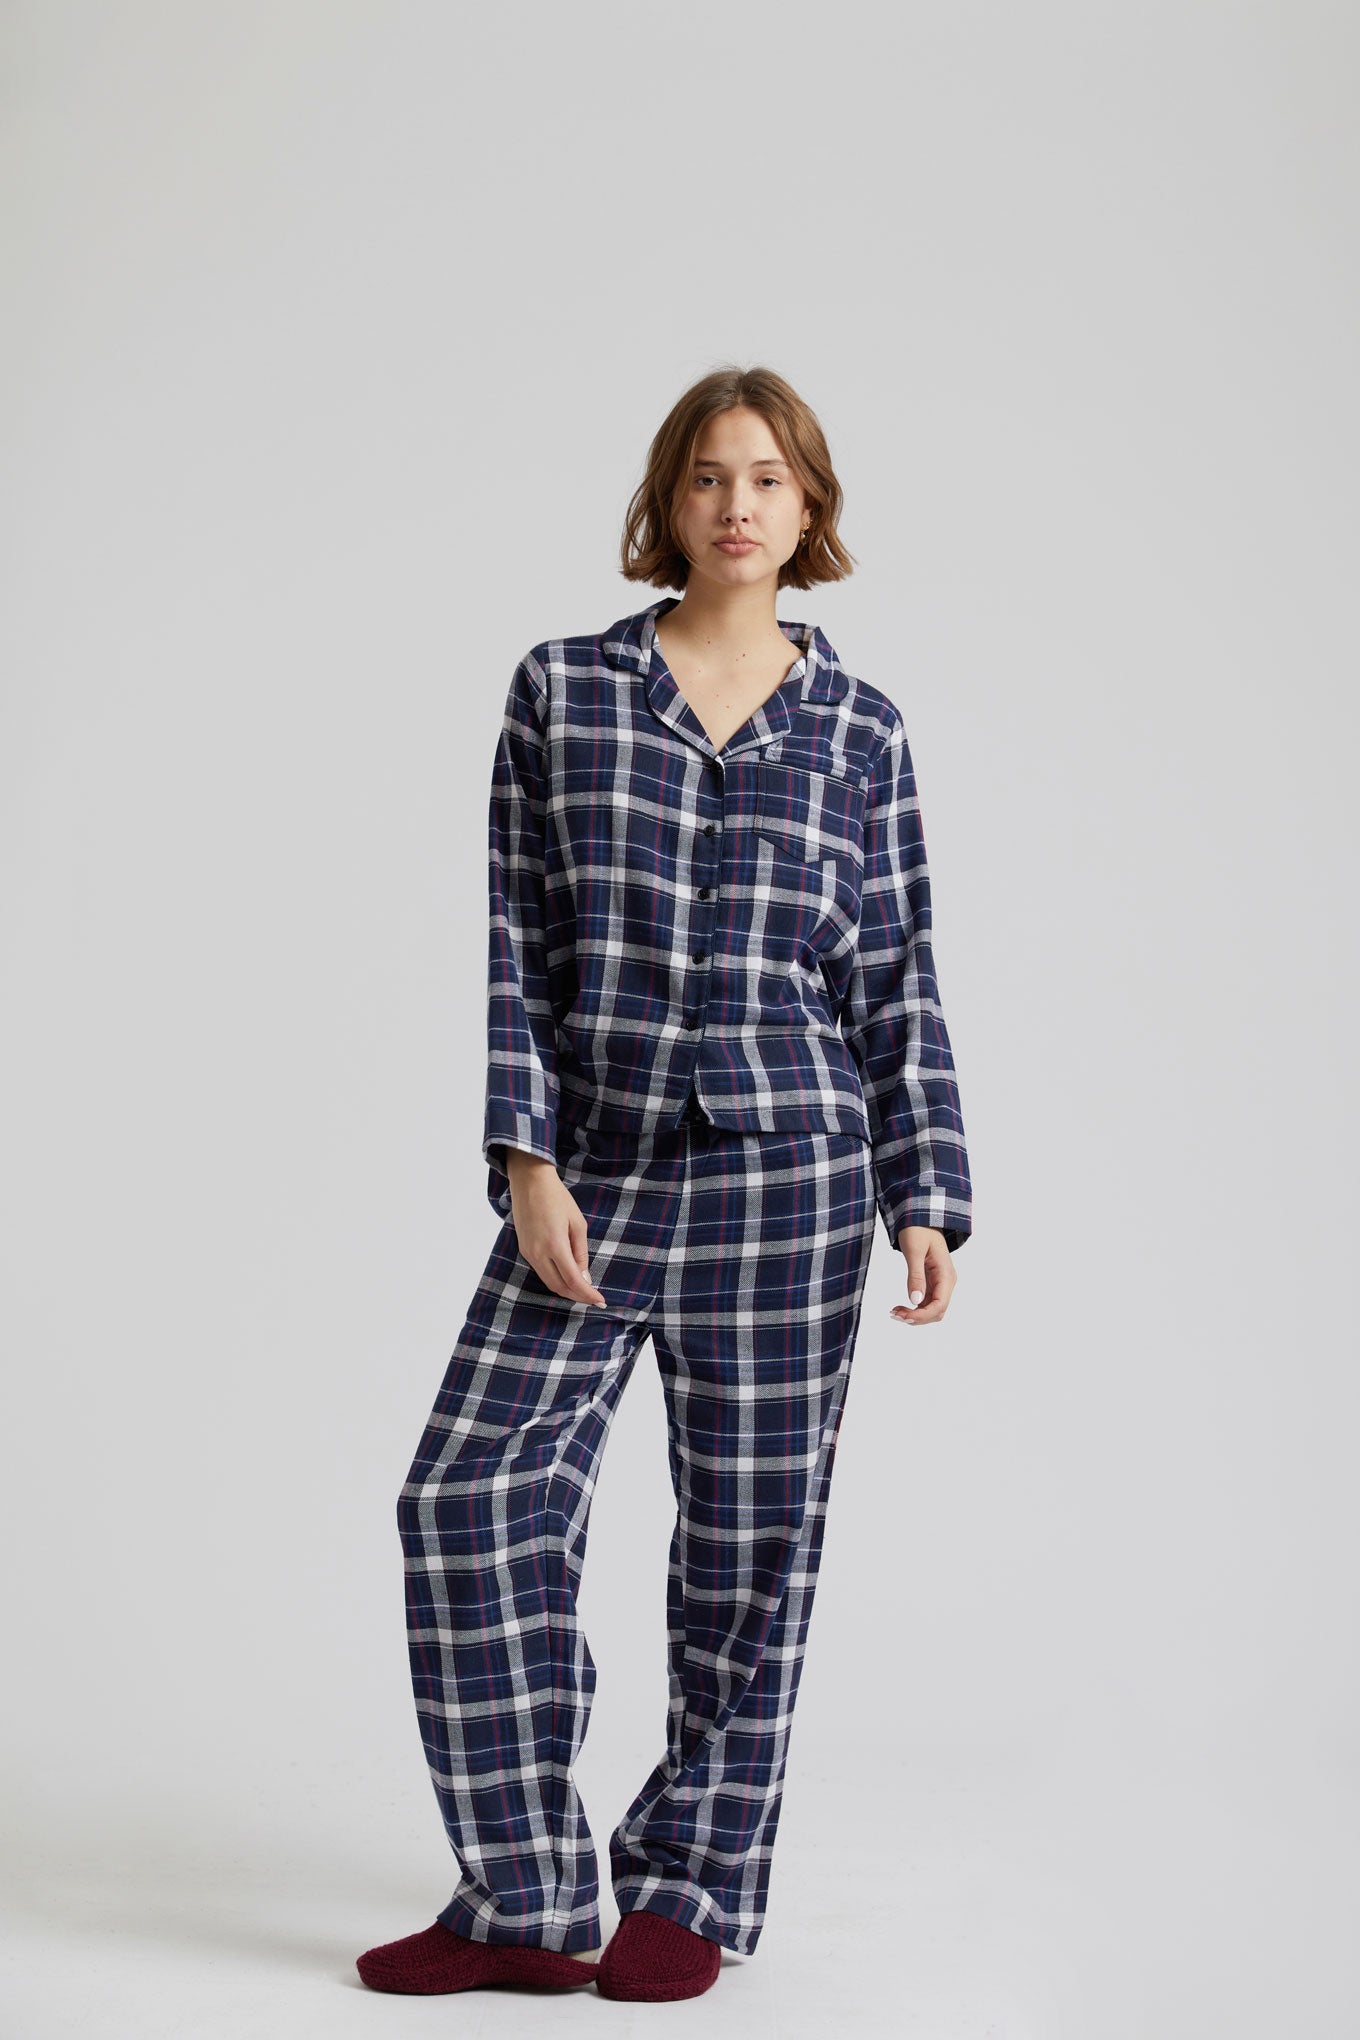 Pyjama JIM JAM bleu foncé en coton 100% biologique de Komodo